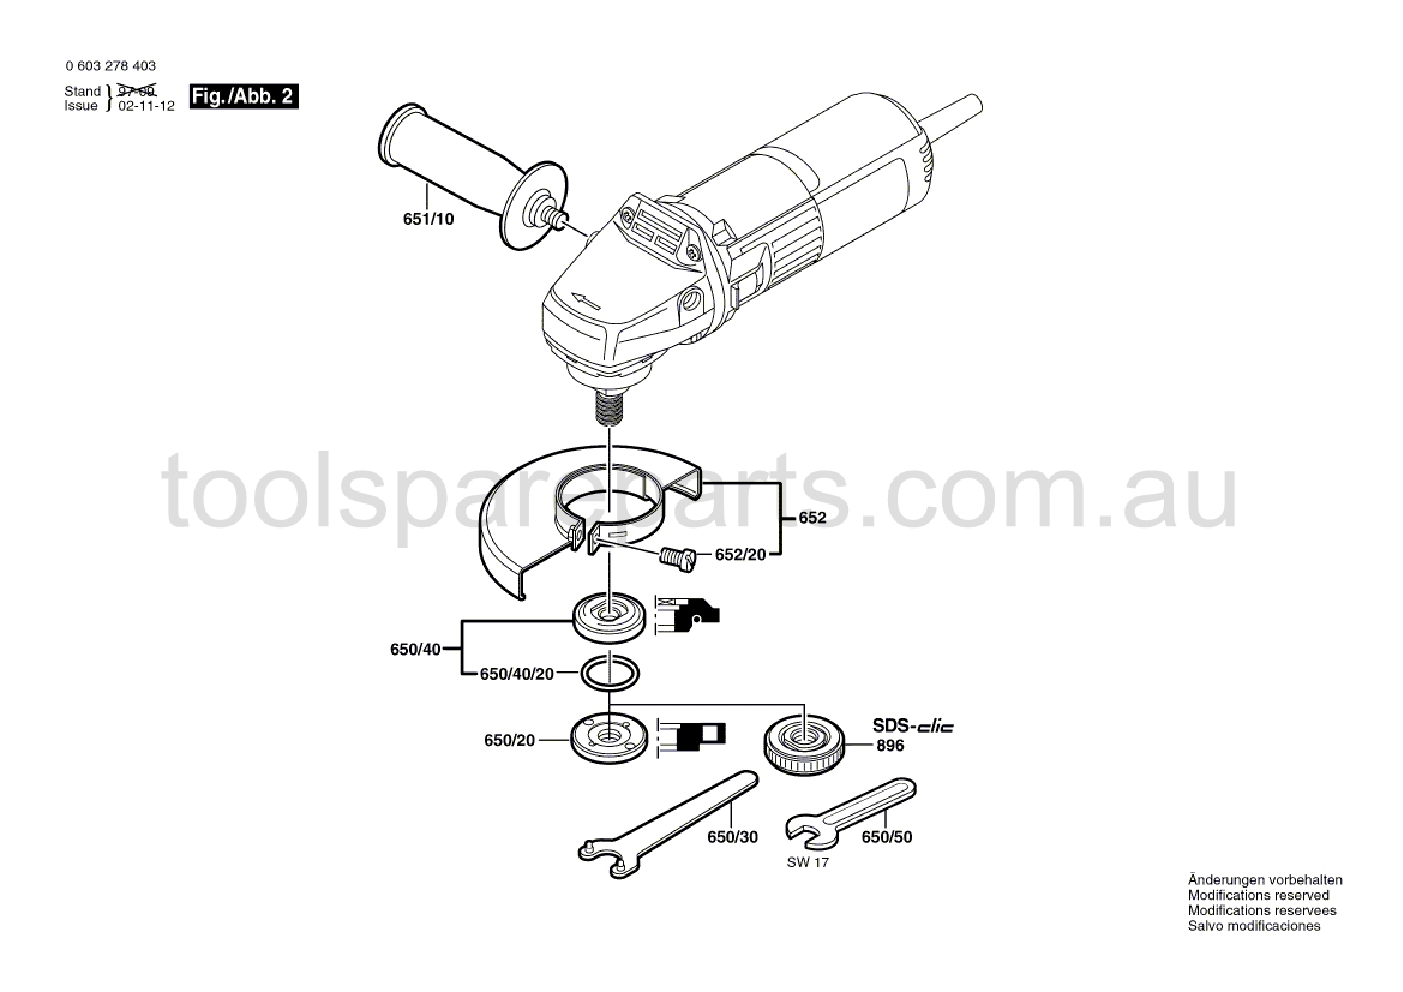 Bosch PWS 6-115 0603278437  Diagram 2